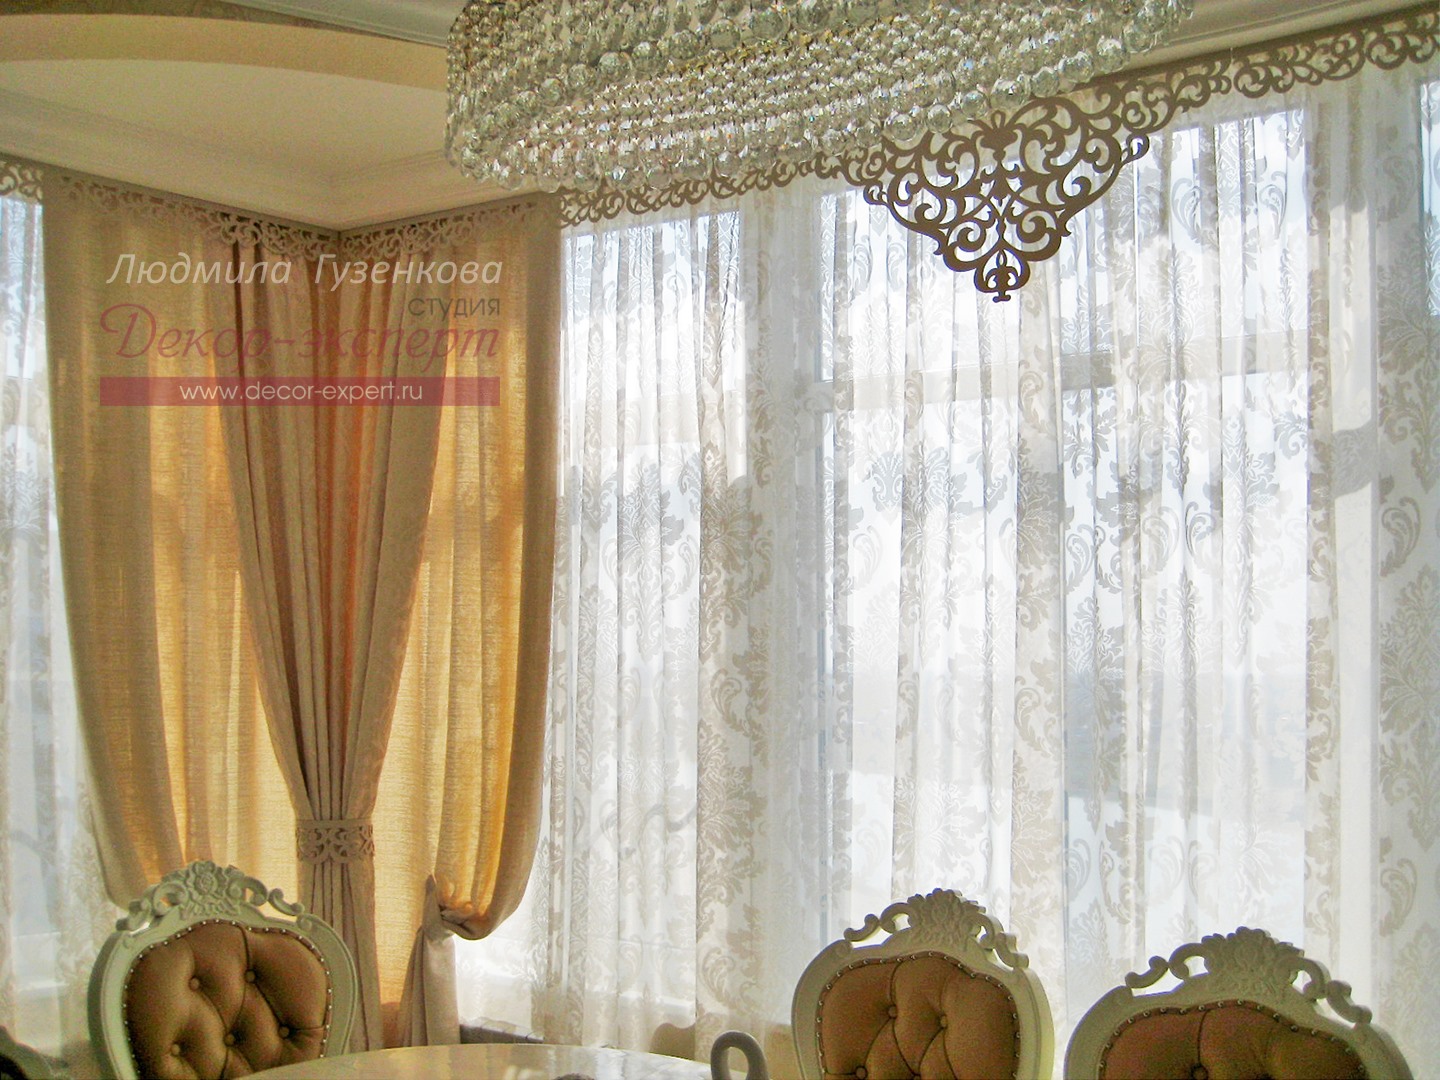 Шторы с нашим ажурным ламбрекеном "Неаполь" в классической гостиной. Проект дизайнера Людмилы Гузенковой, Краснодар.